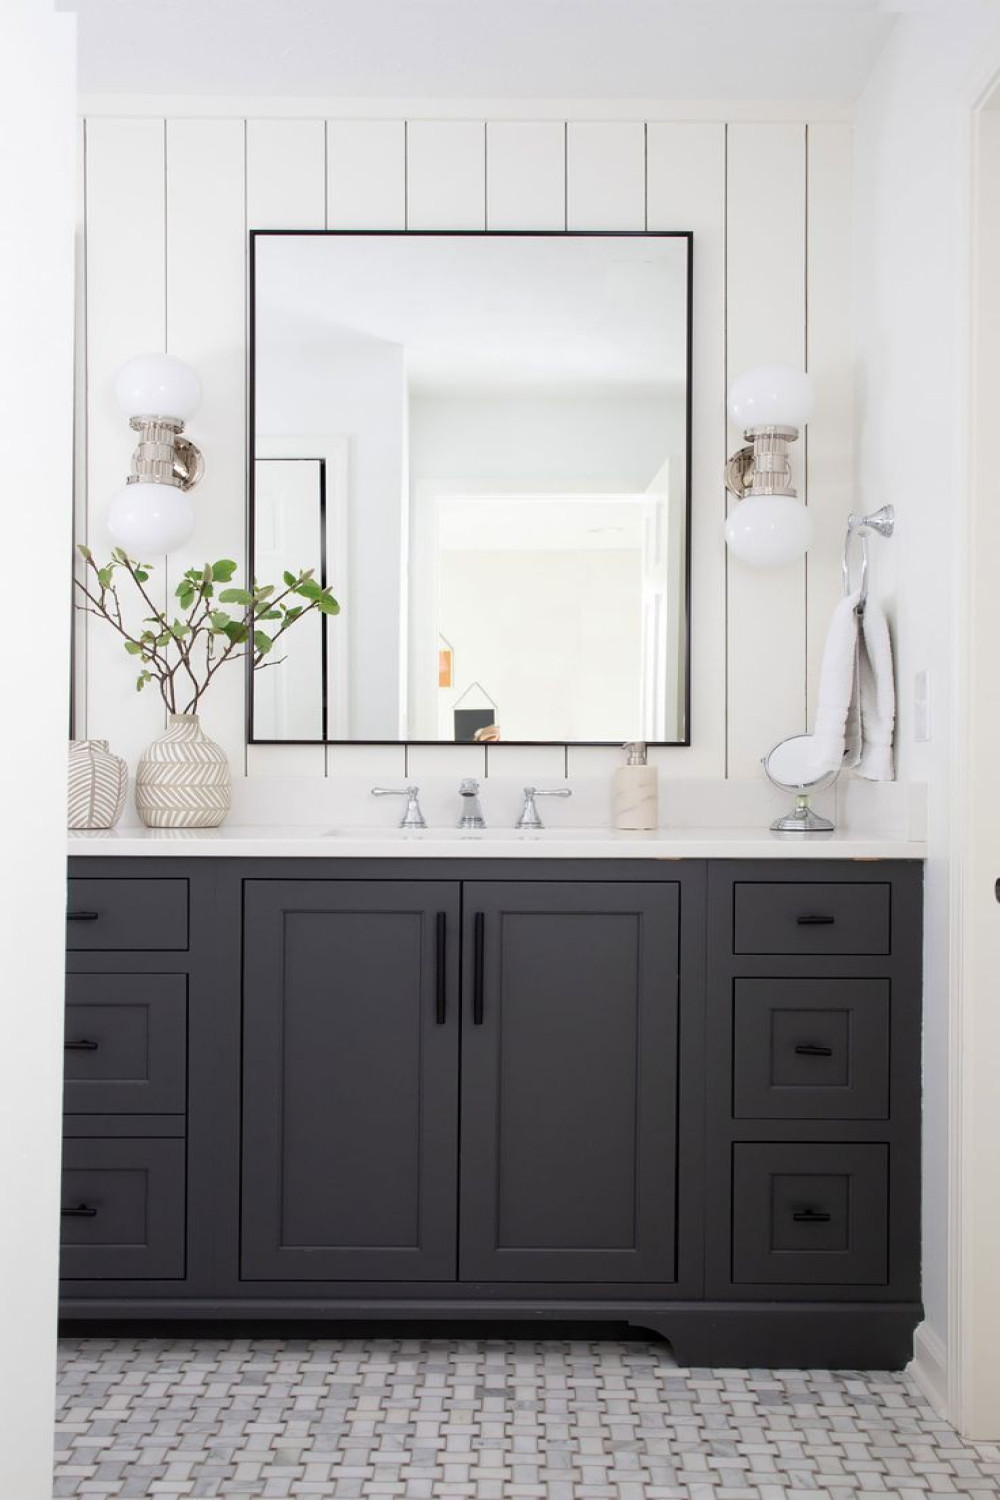 Bathroom Mirror Ideas Reflective Interior Design Elements